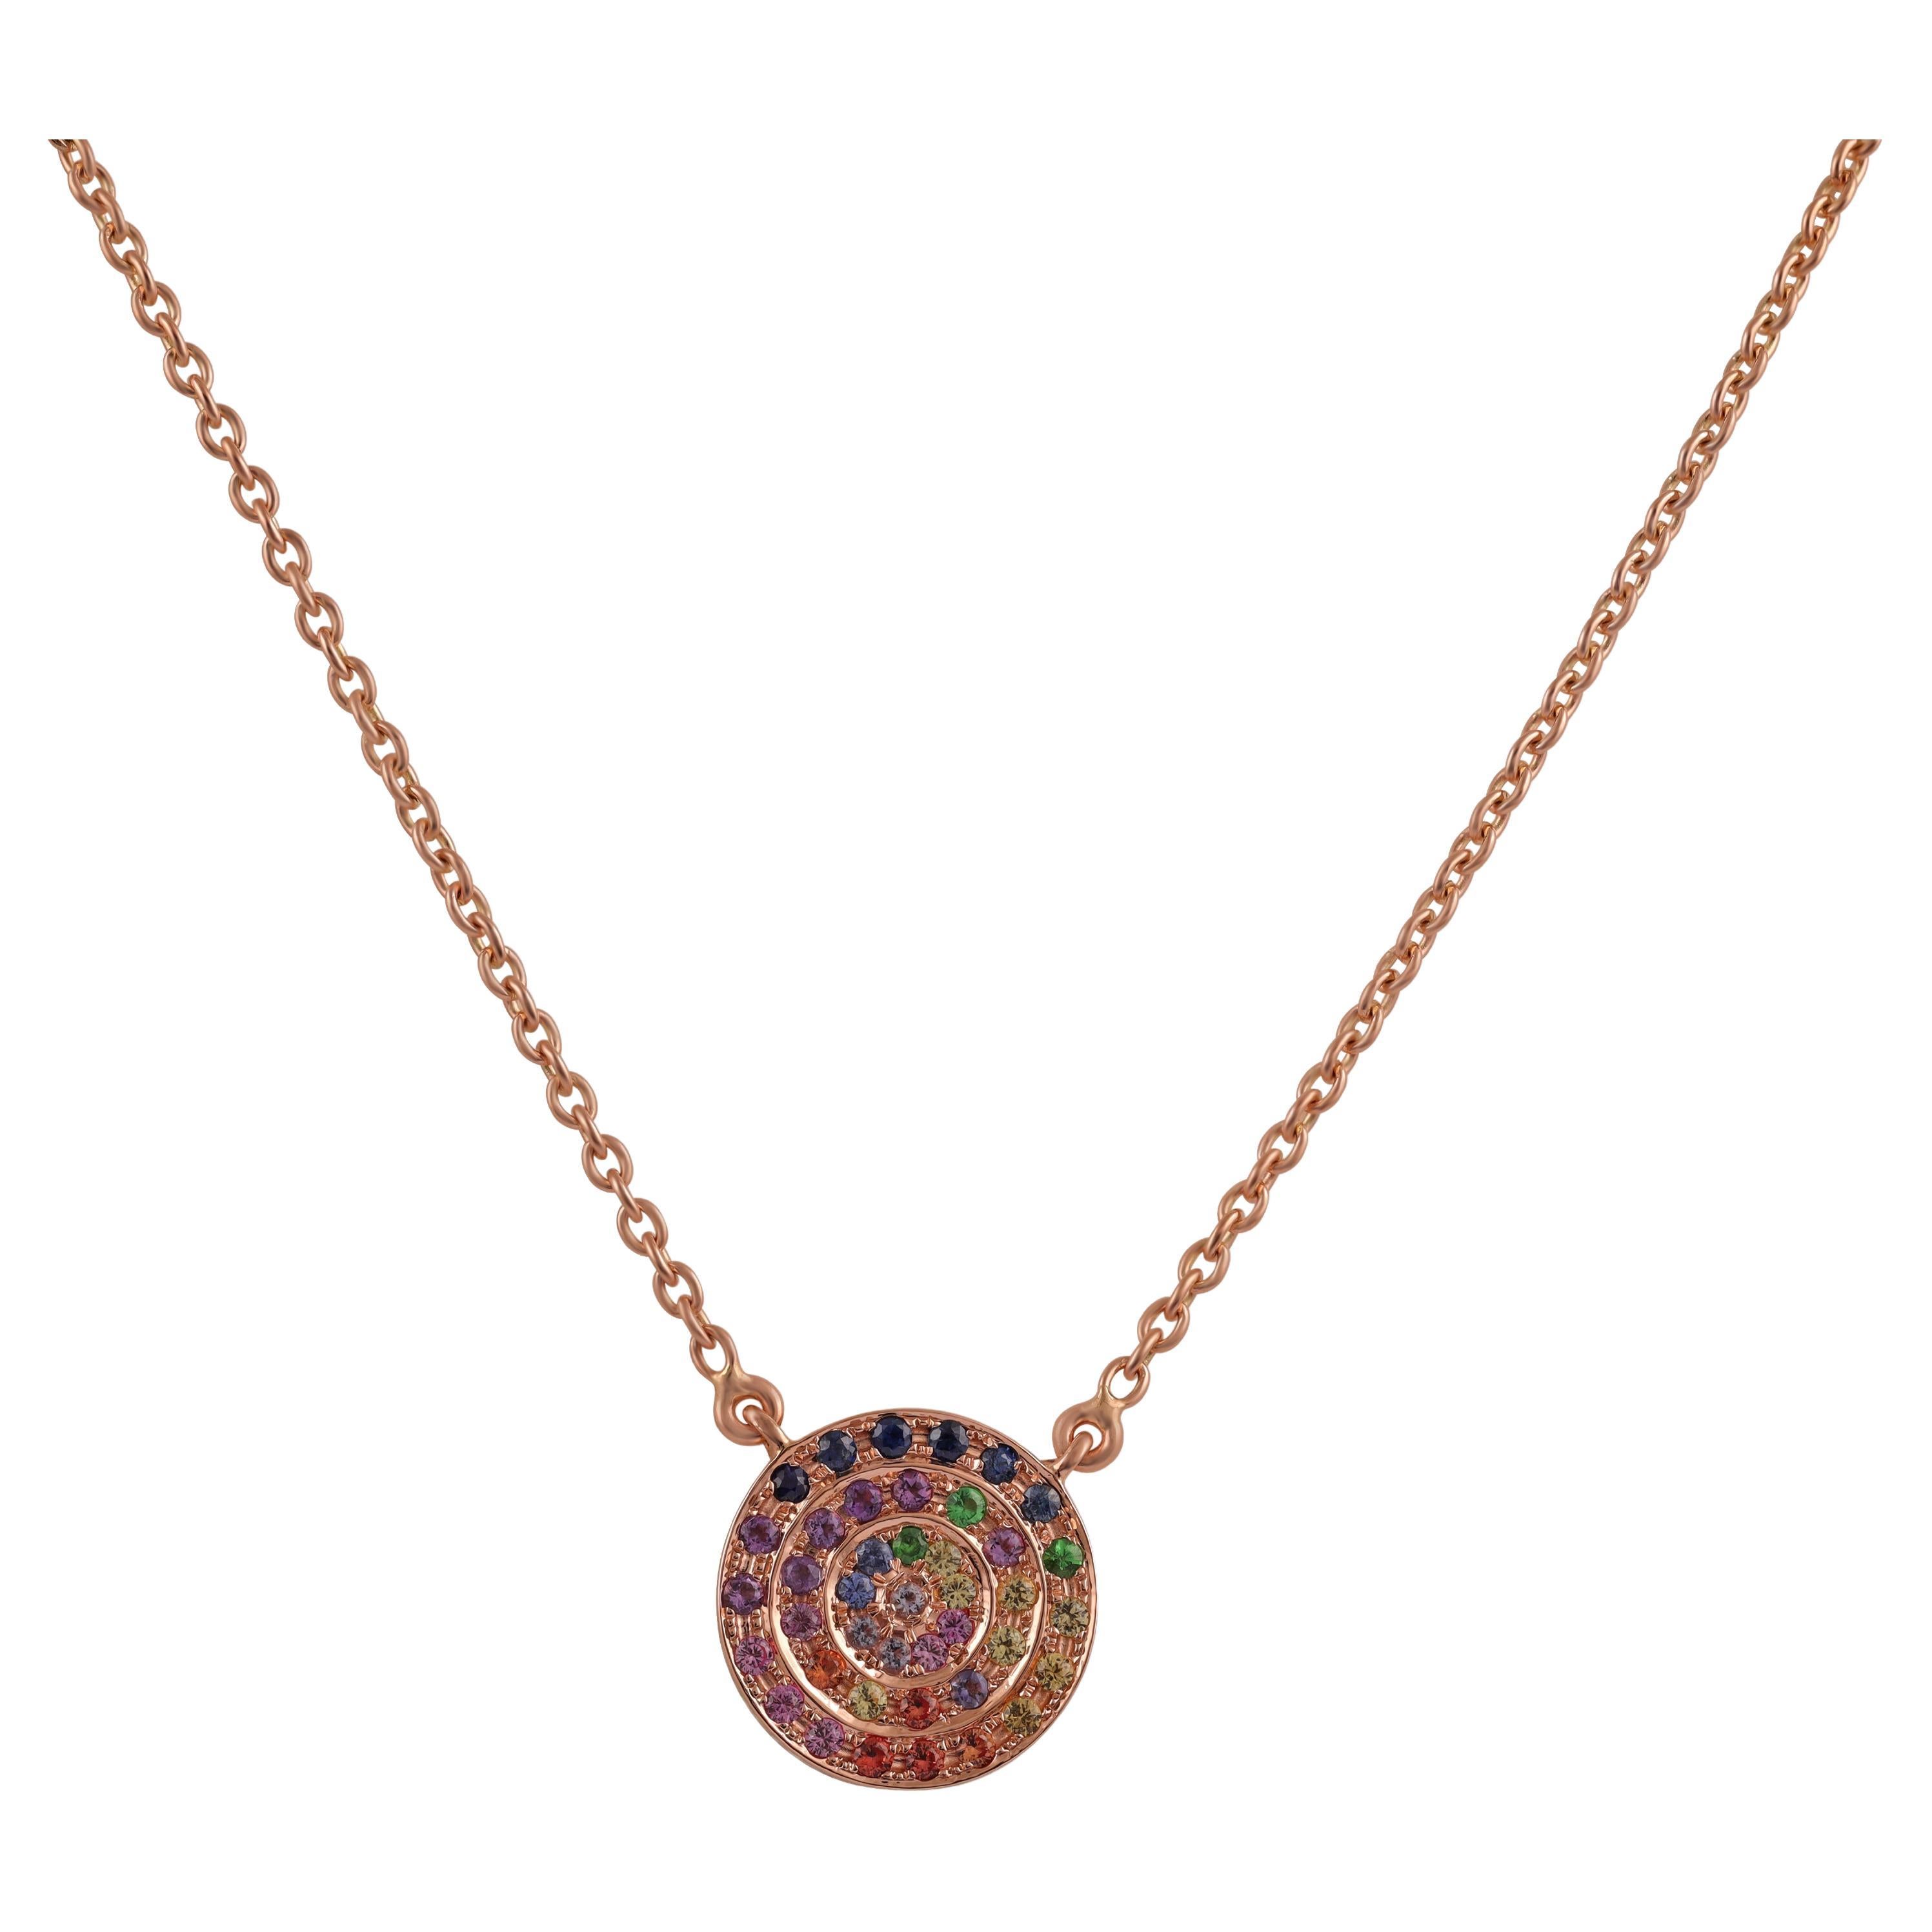 Pendentif en or rose 18 carats avec saphirs ronds multicolores, tsavorites et améthystes